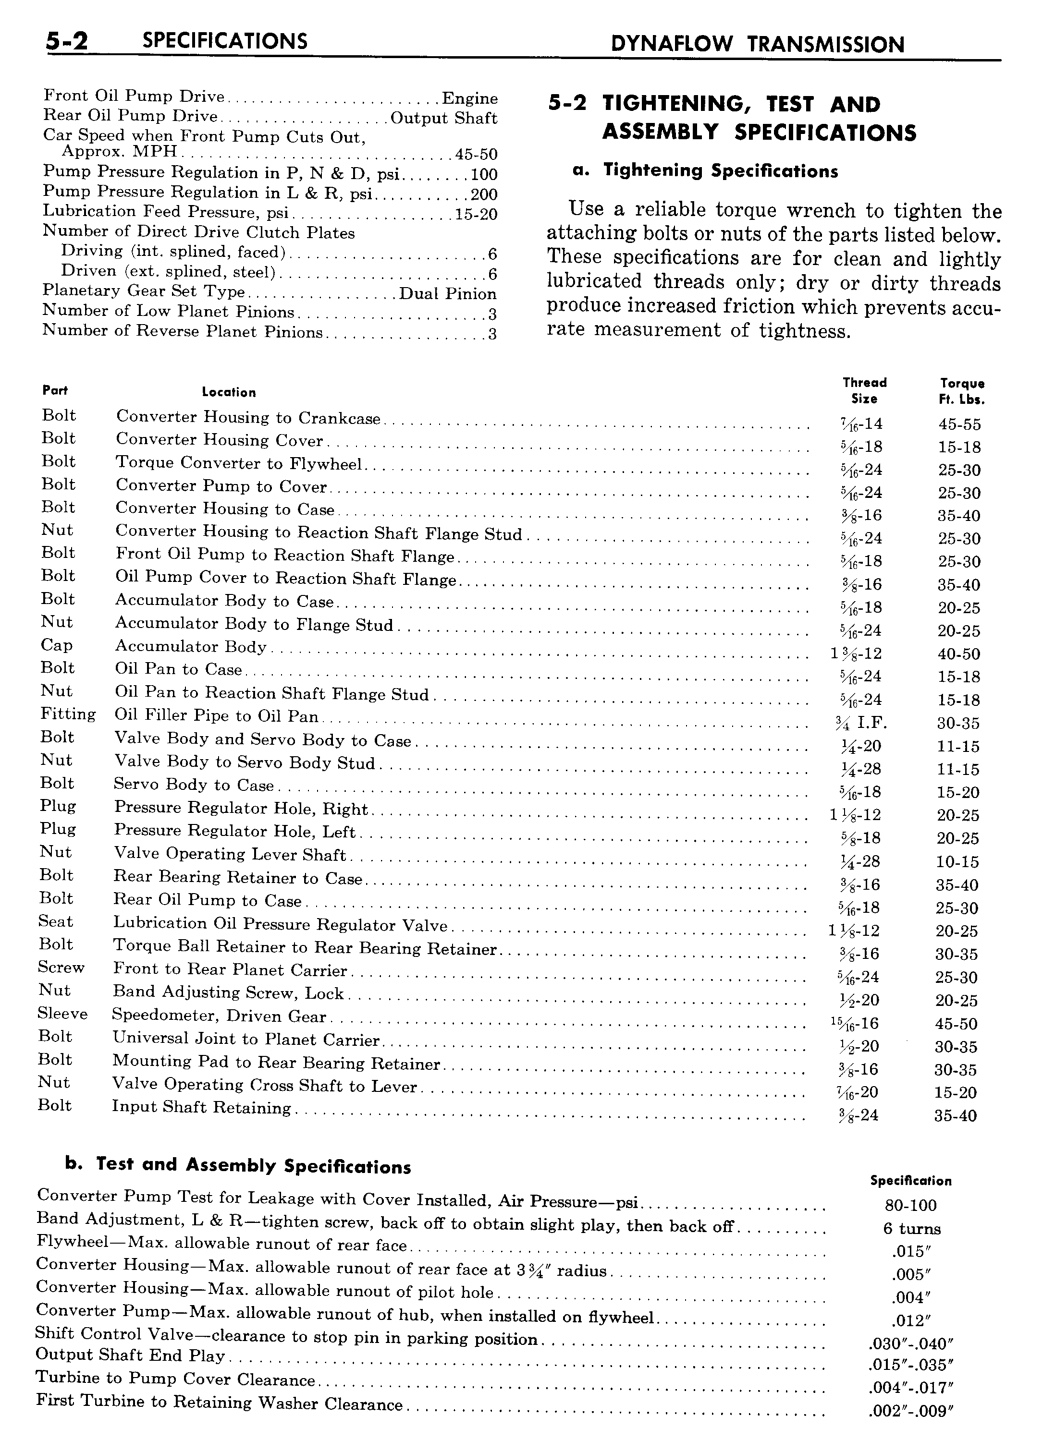 n_06 1957 Buick Shop Manual - Dynaflow-002-002.jpg